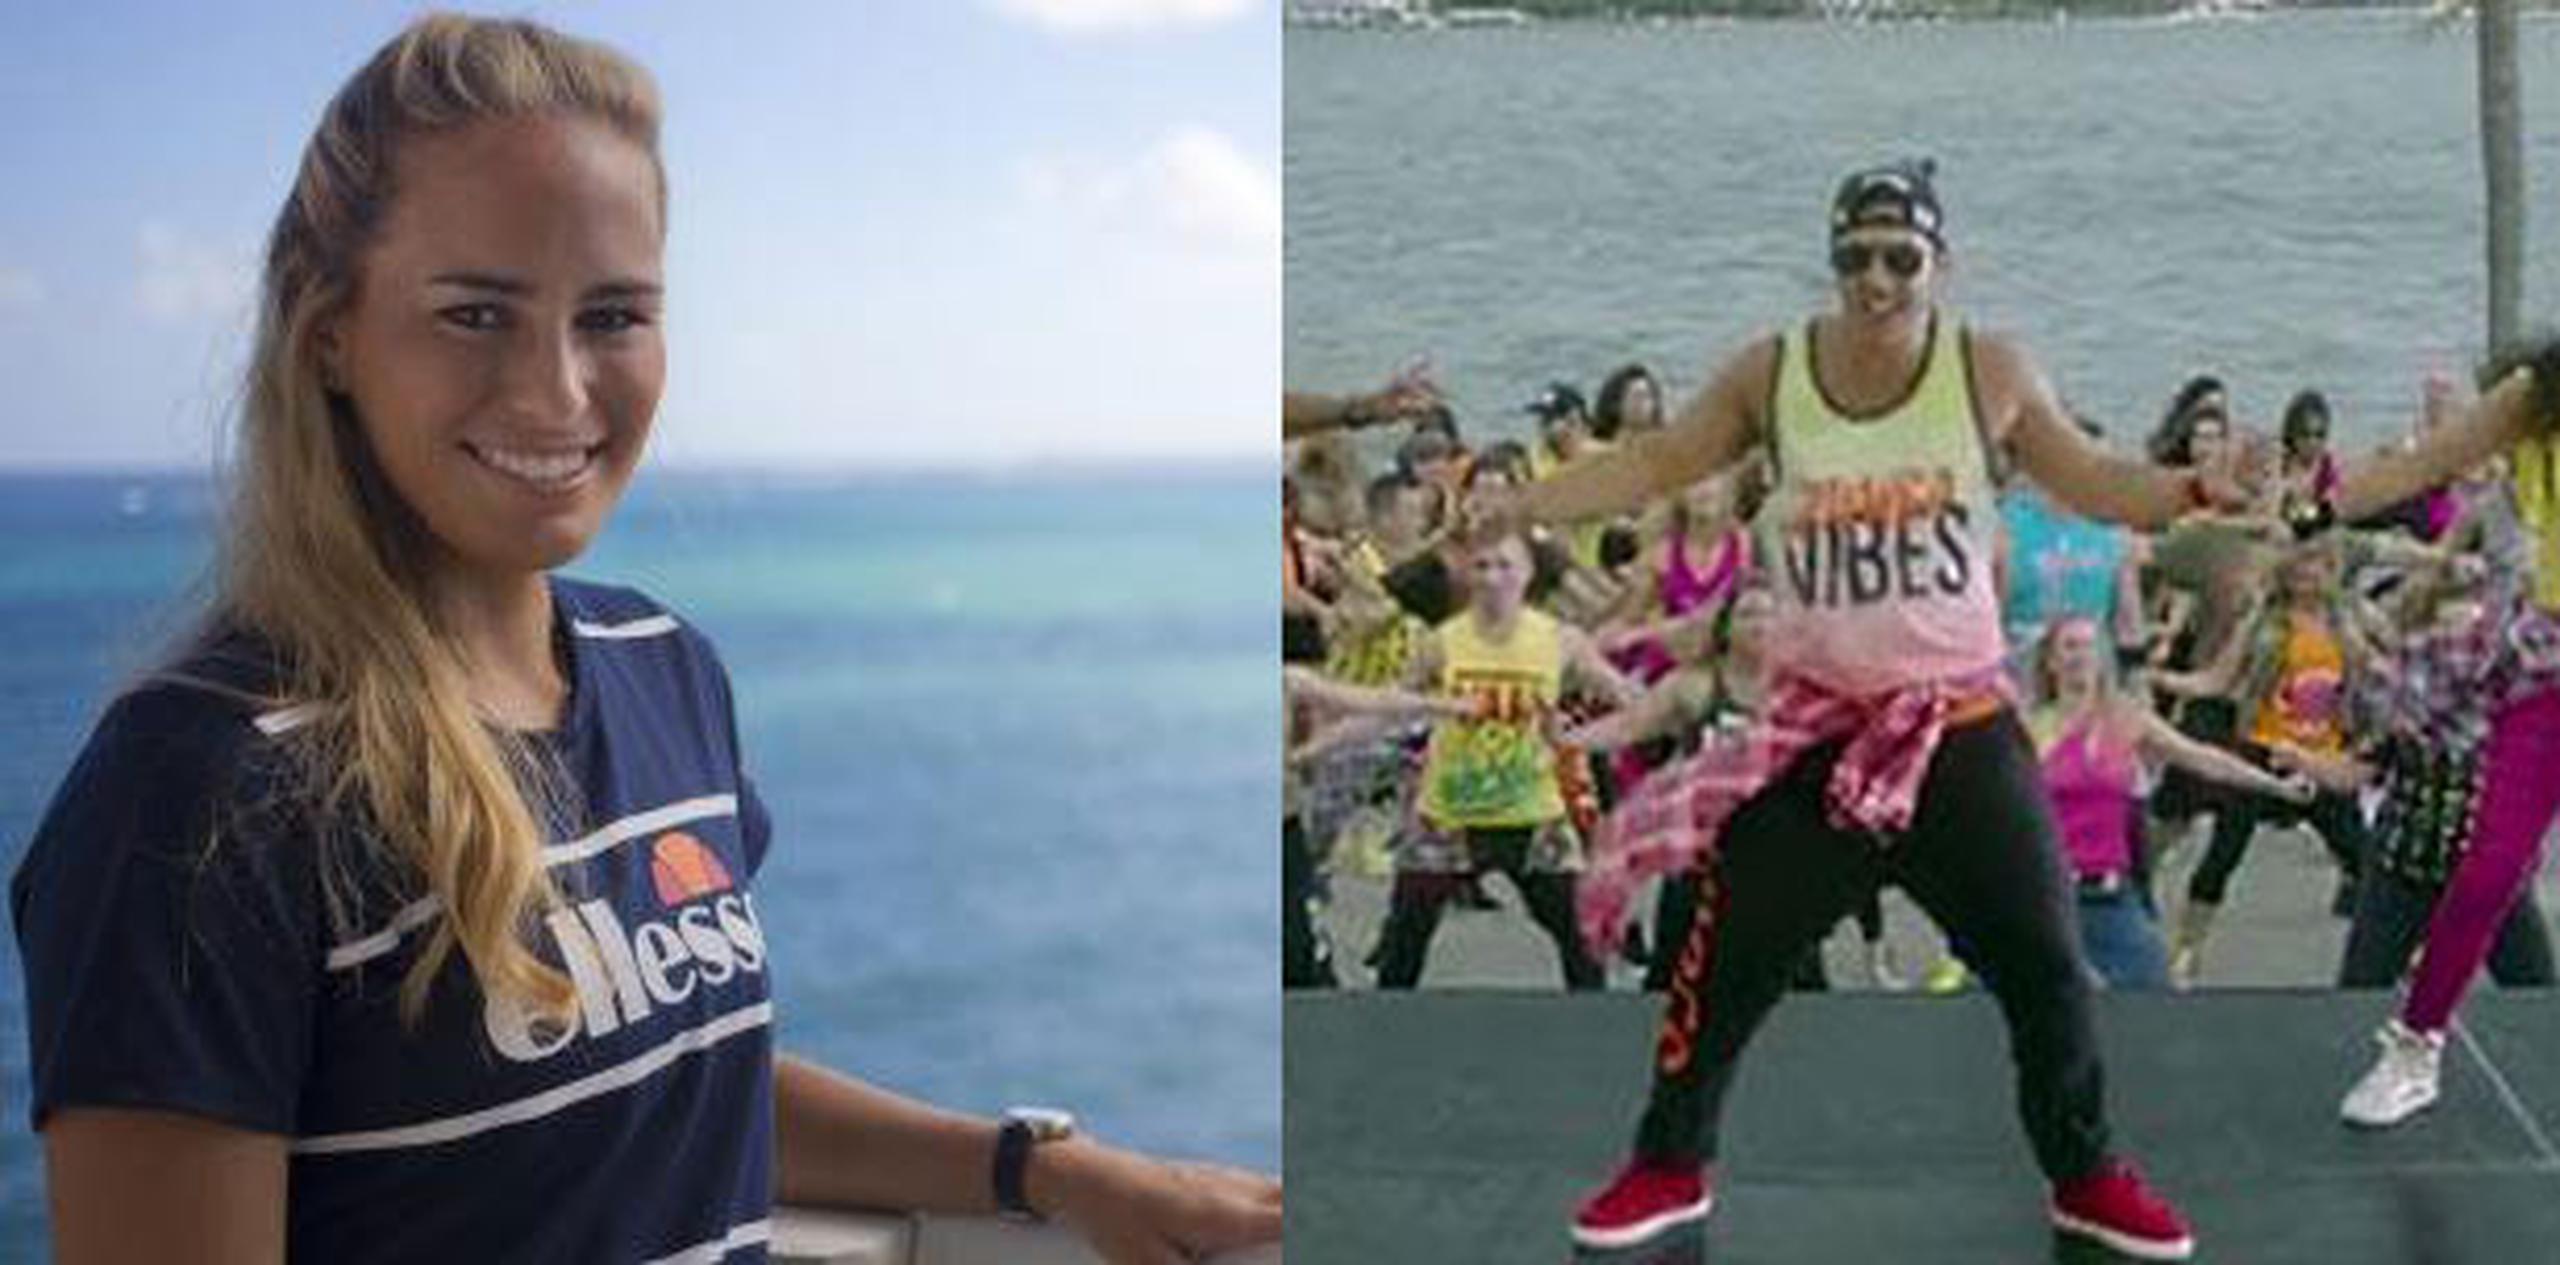 El tema "Hula Hoop" forma parte de una alianza global entre Daddy Yankee y el movimiento mundial de baile y ejercicio Zumba. (Archivo)